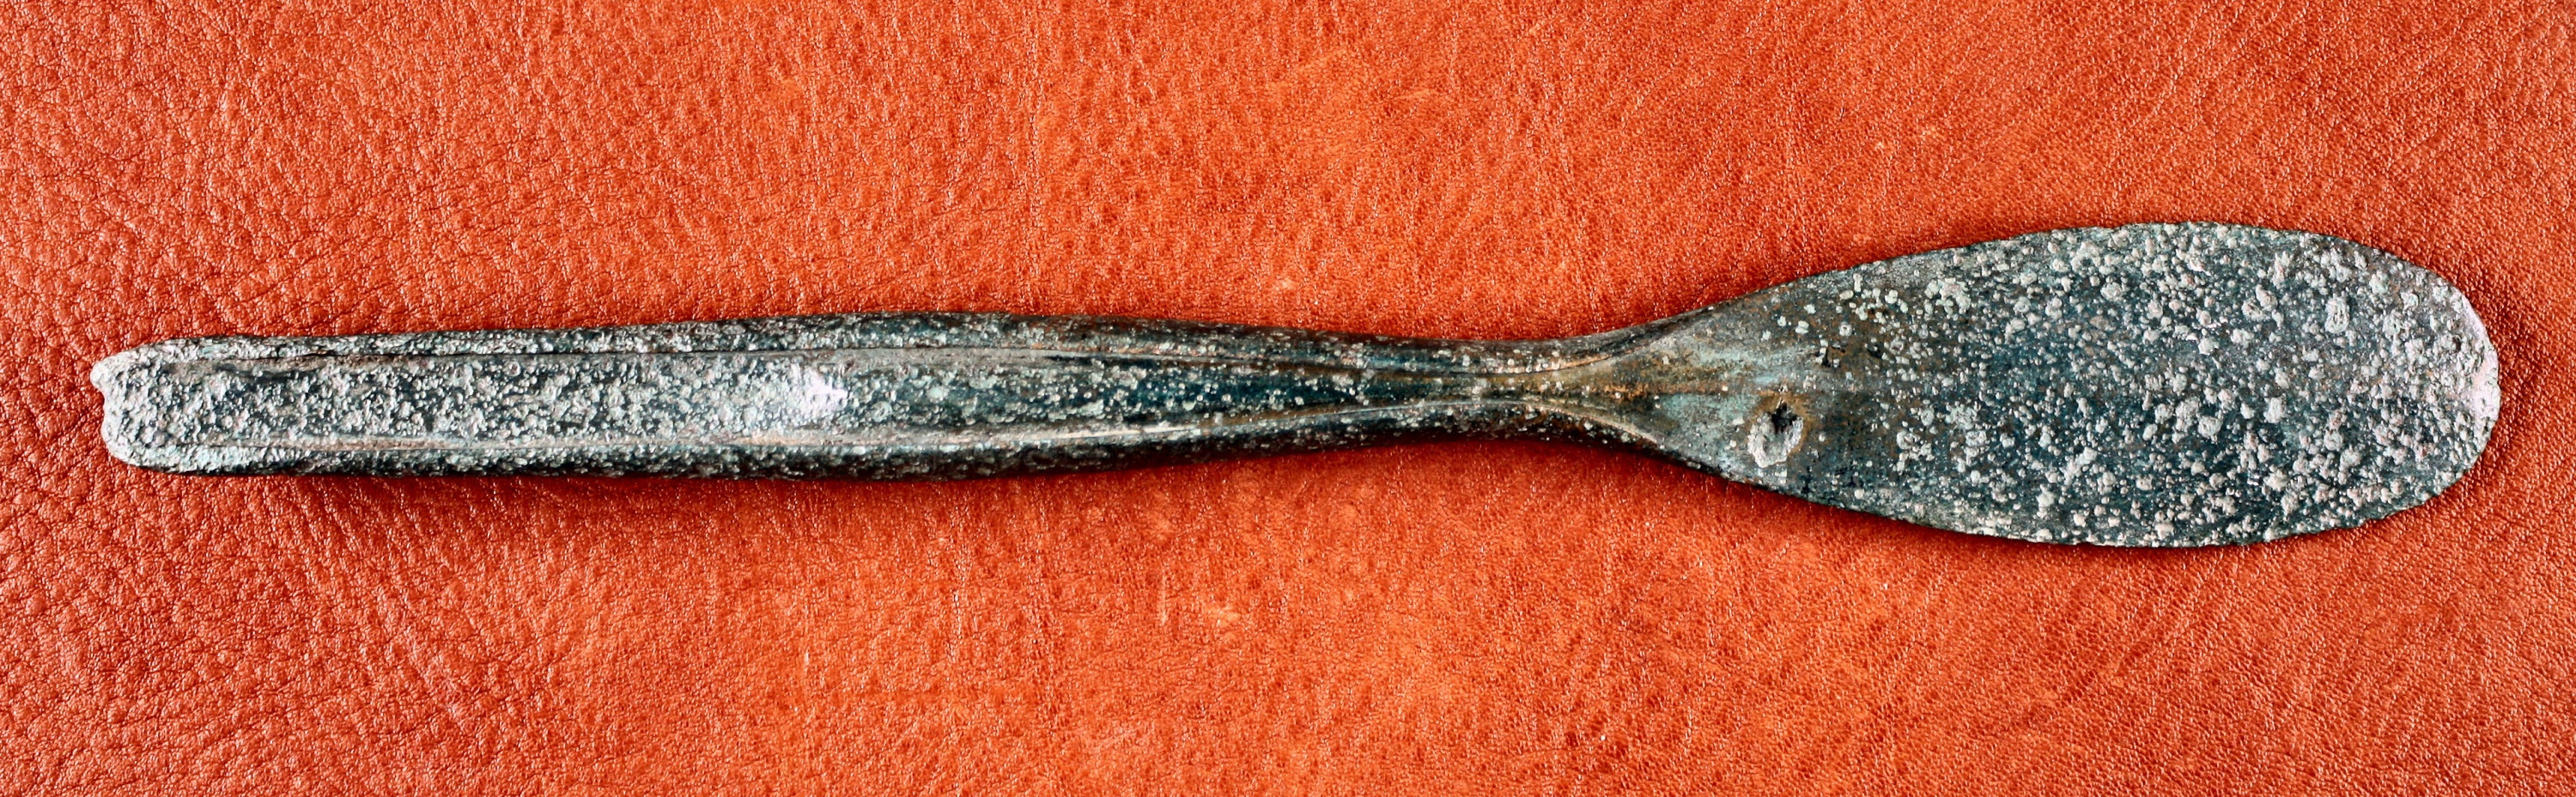 Löffelbeil vom Typ „Bevaix“ aus dem Hortfund von Kläden (Johann-Friedrich-Danneil-Museum Salzwedel CC BY-NC-SA)